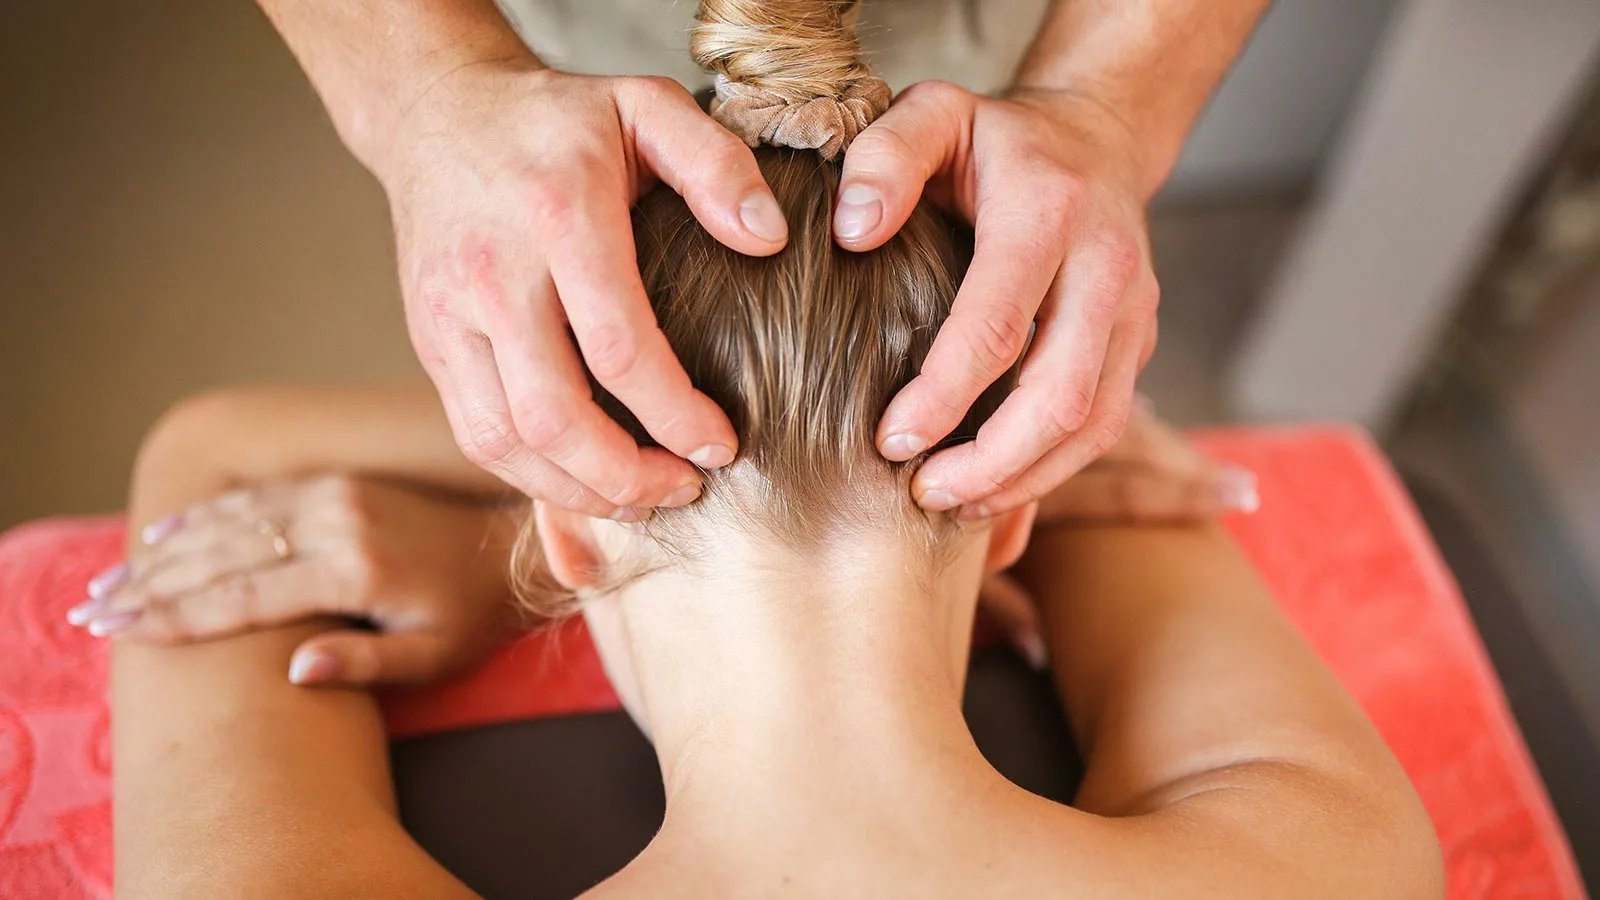 First massage. Массаж головы. Массаж затылка головы. Тайский массаж головы. Массаж волосистой части головы и воротниковой зоны.